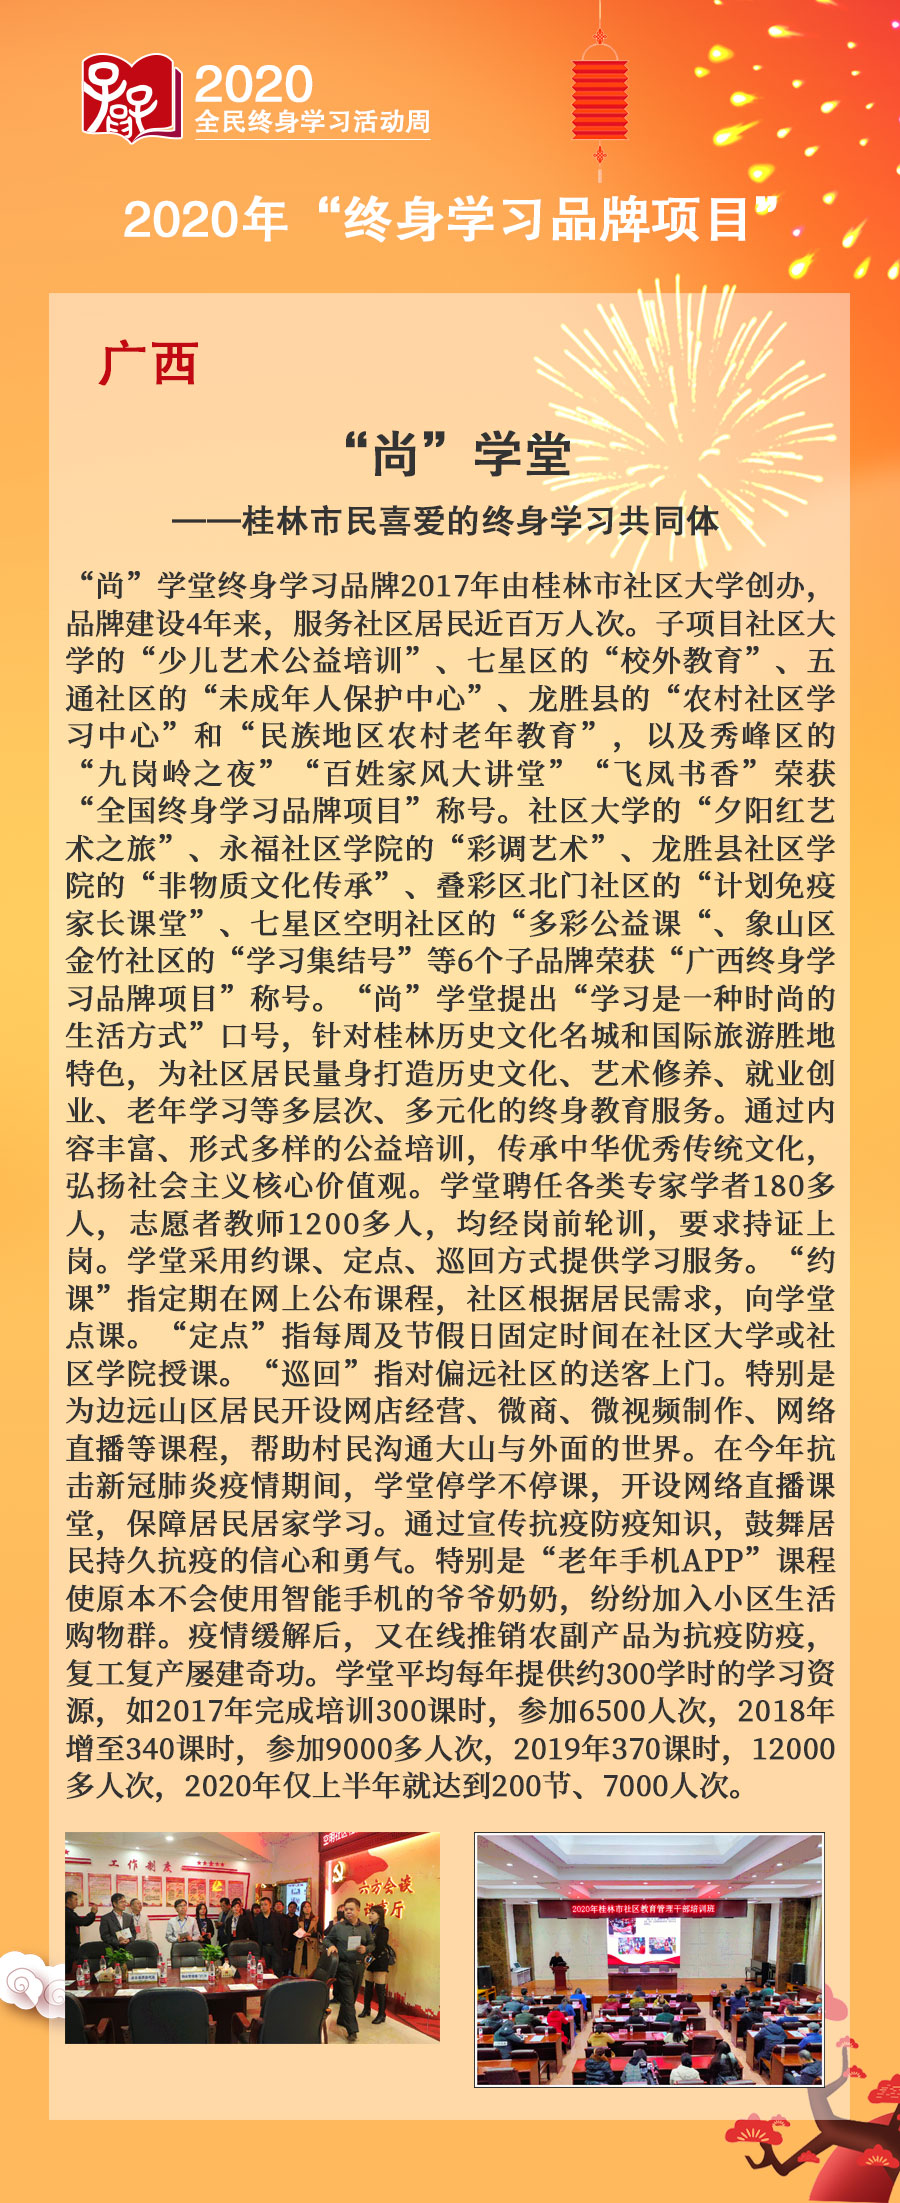 14.广西省：“尚”学堂—桂林市民喜爱的终身学习共同体.jpg